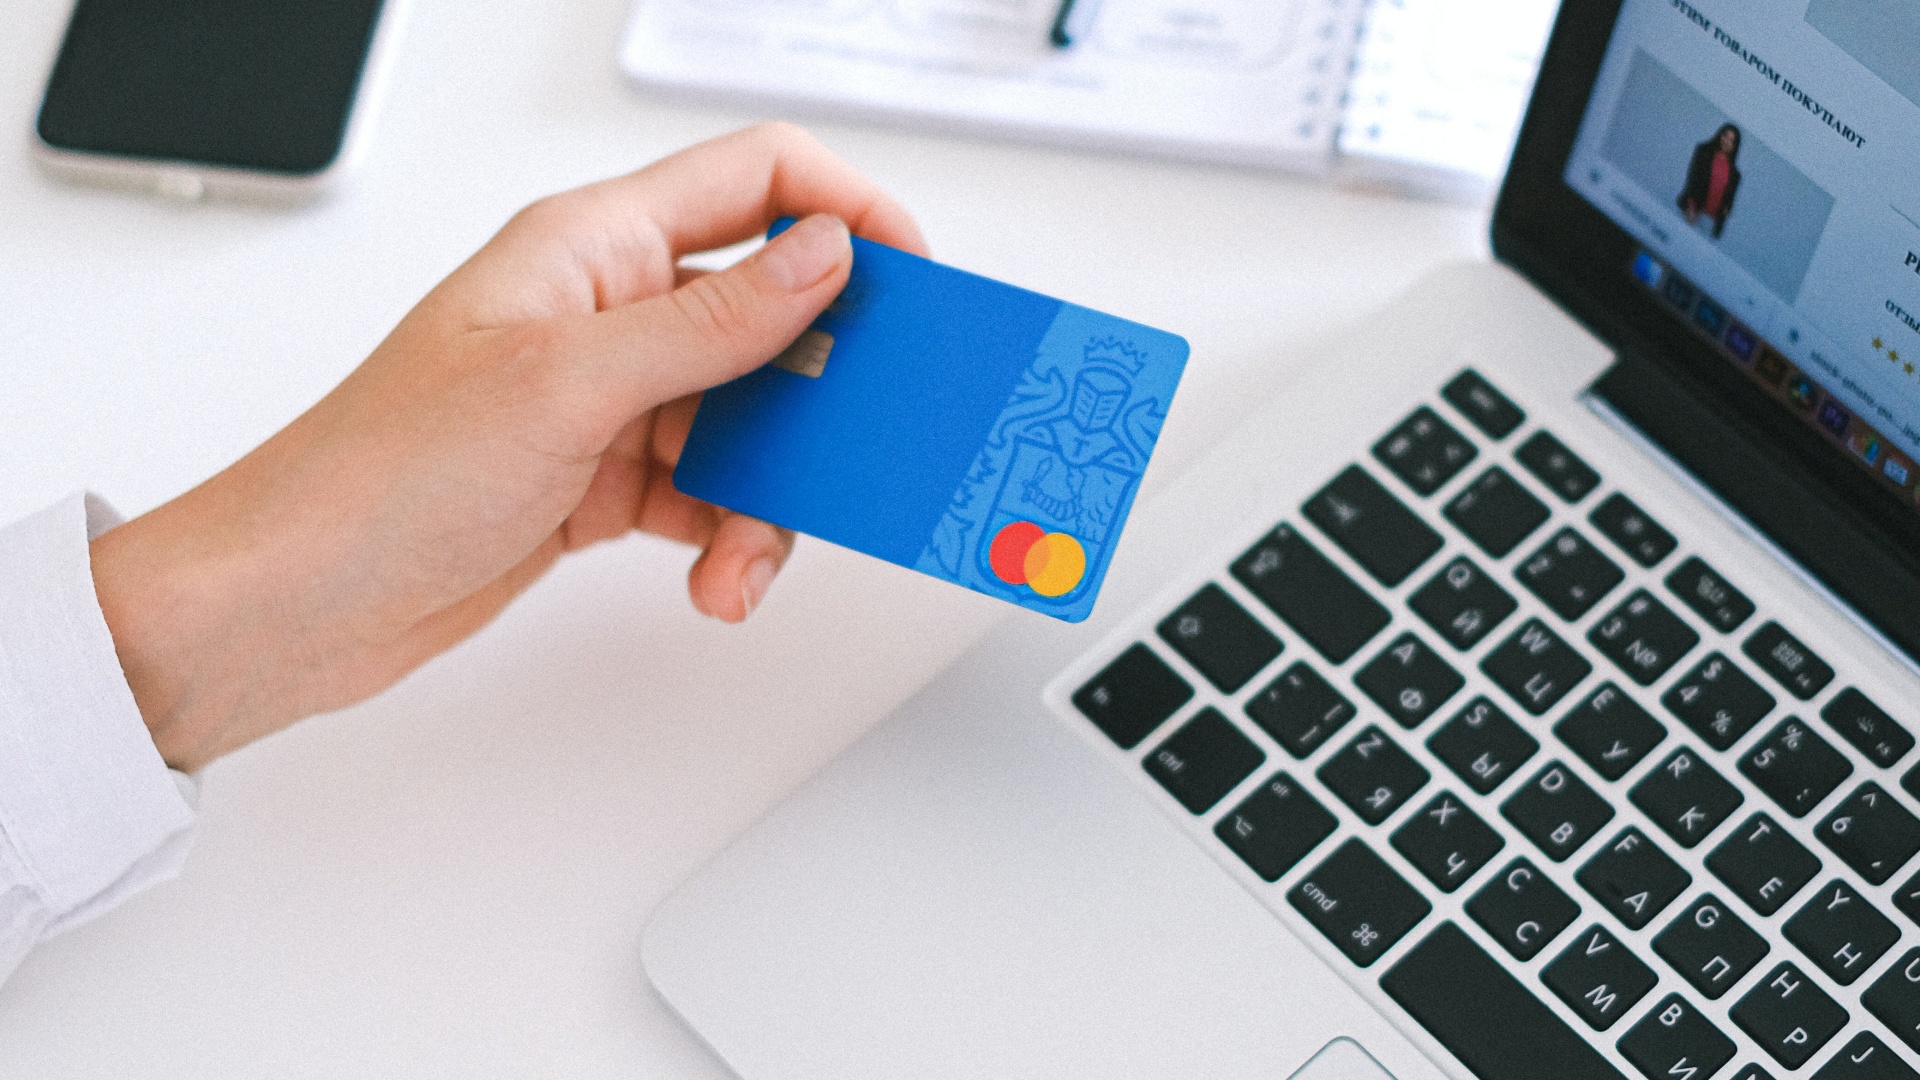 Internetes vásárláshoz használt bankkártyát fog a kezében a laptopnál ülő nő